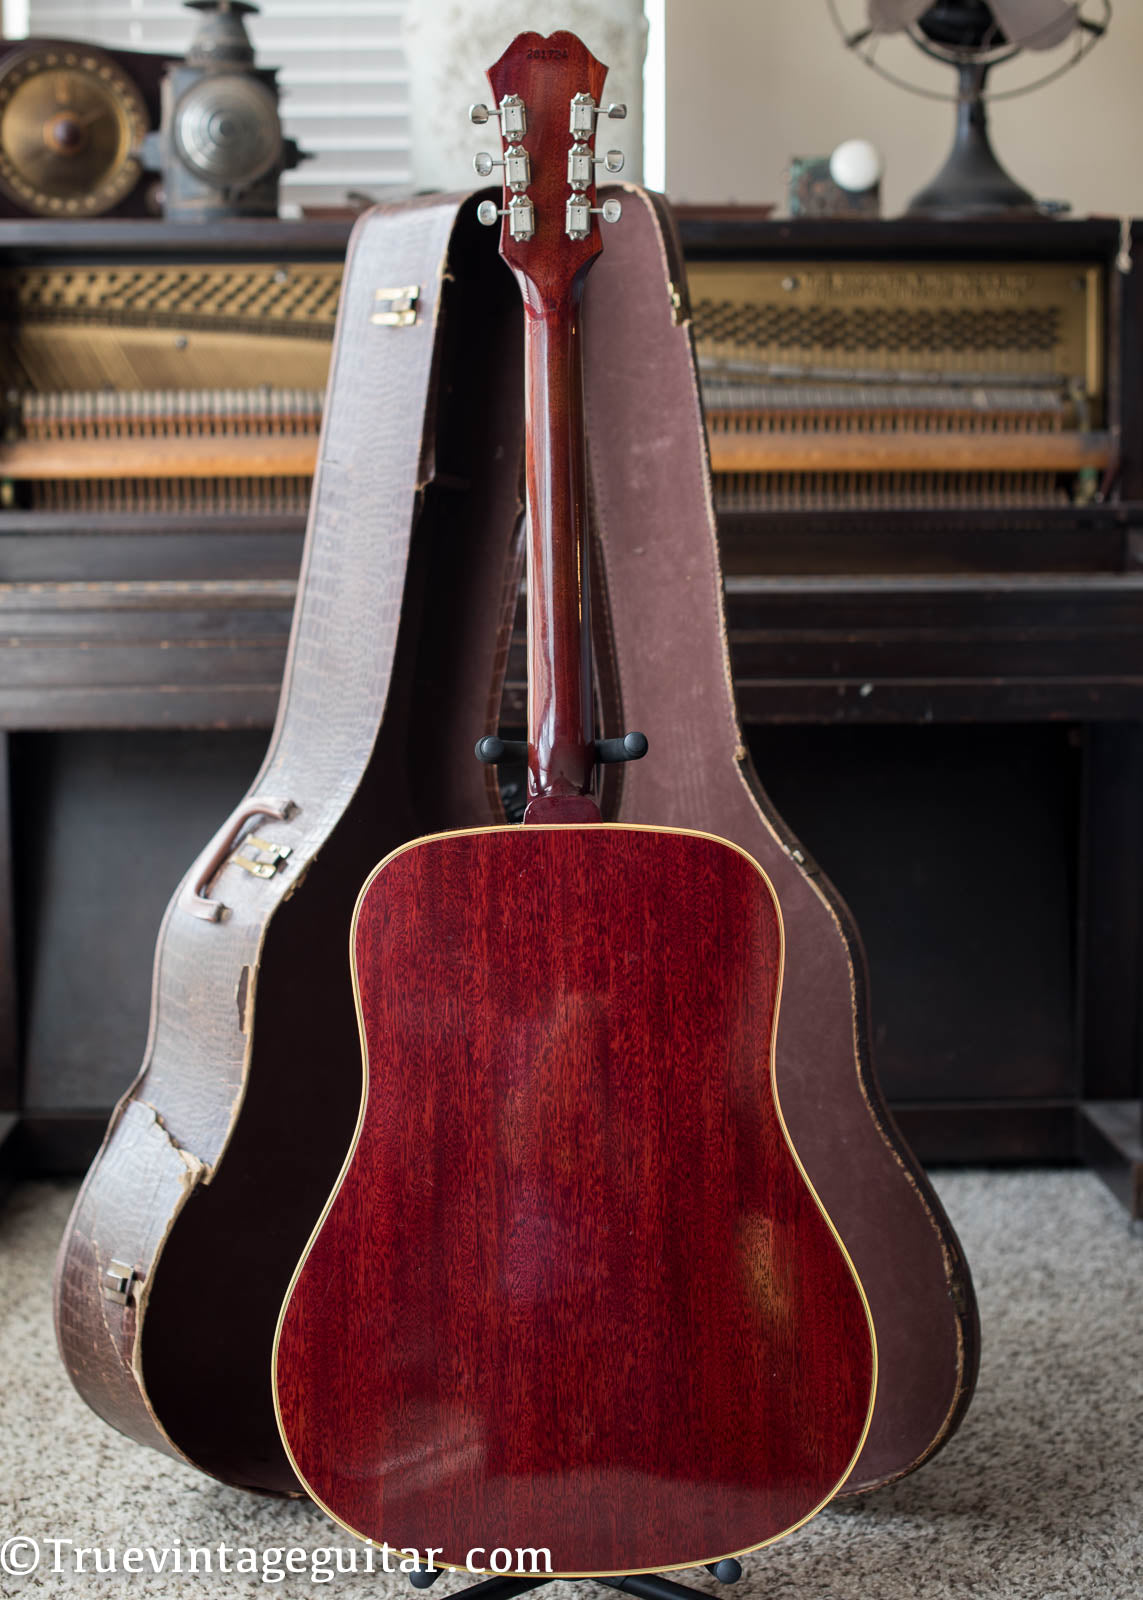 Vintage Epiphone acoustic guitar 1965 El Dorado